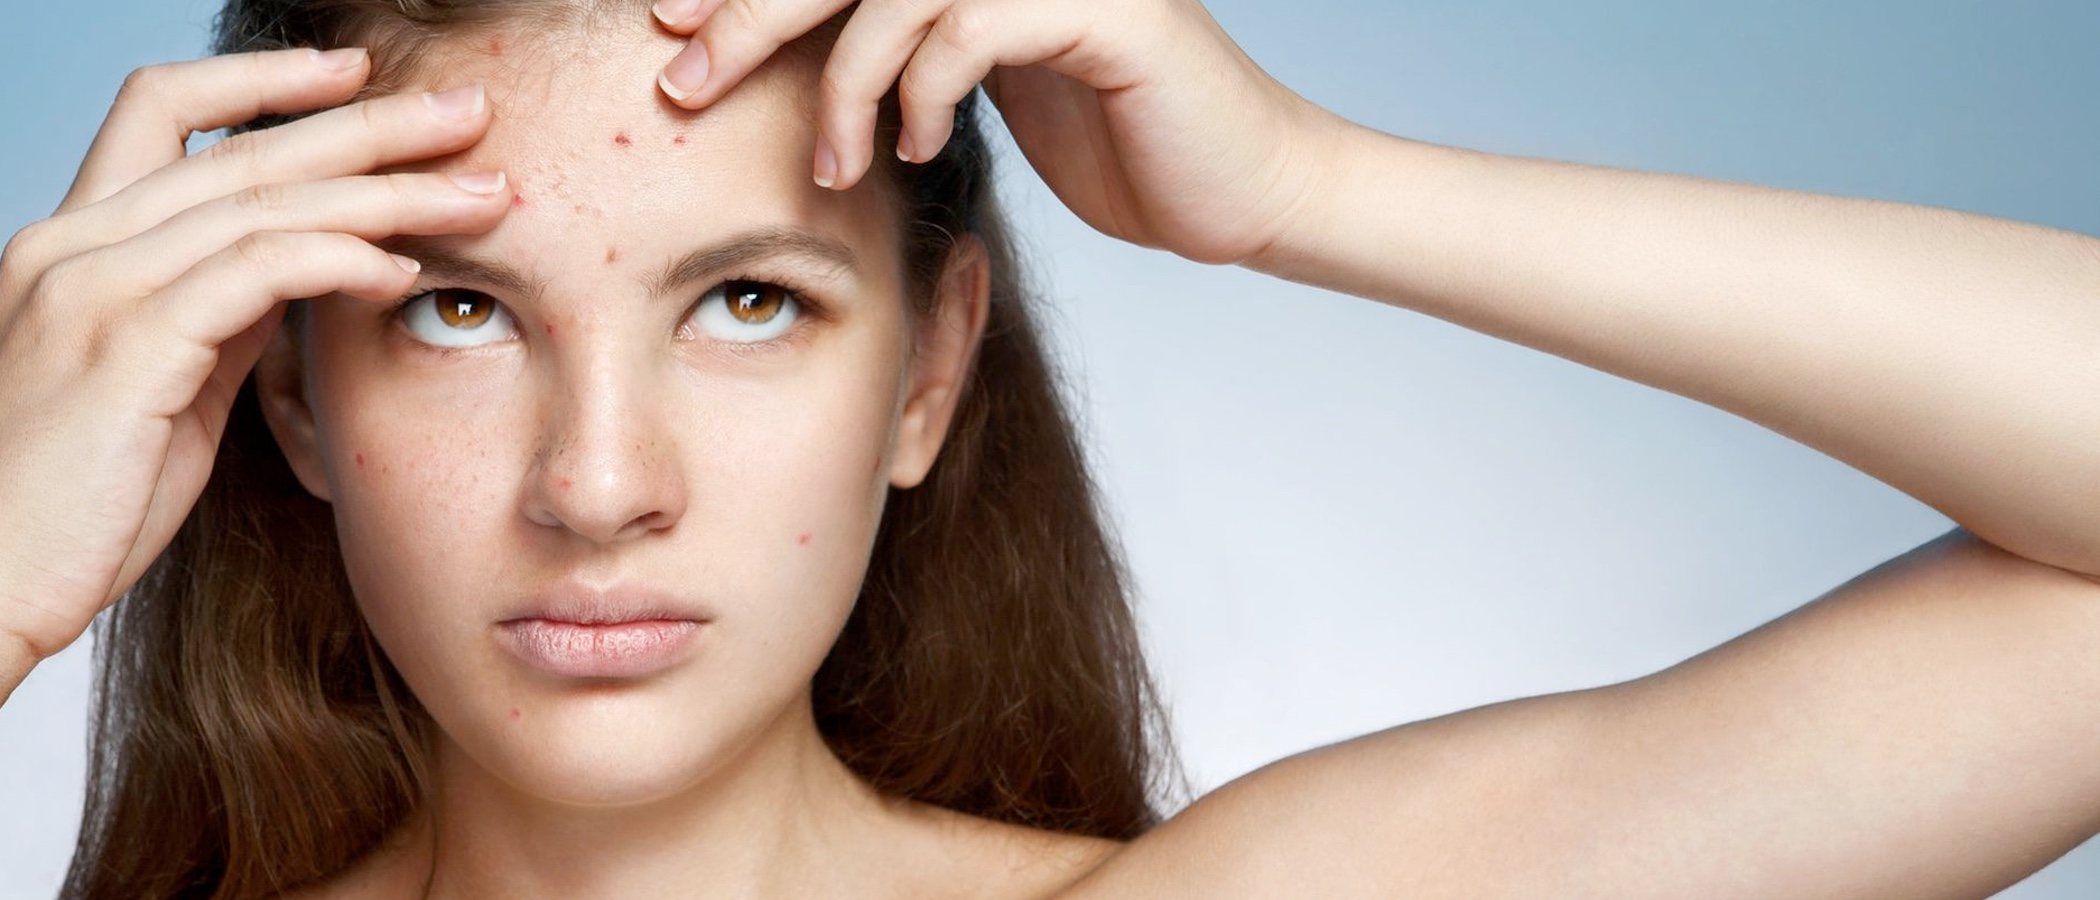 Cómo cuidar la cara con acné en verano